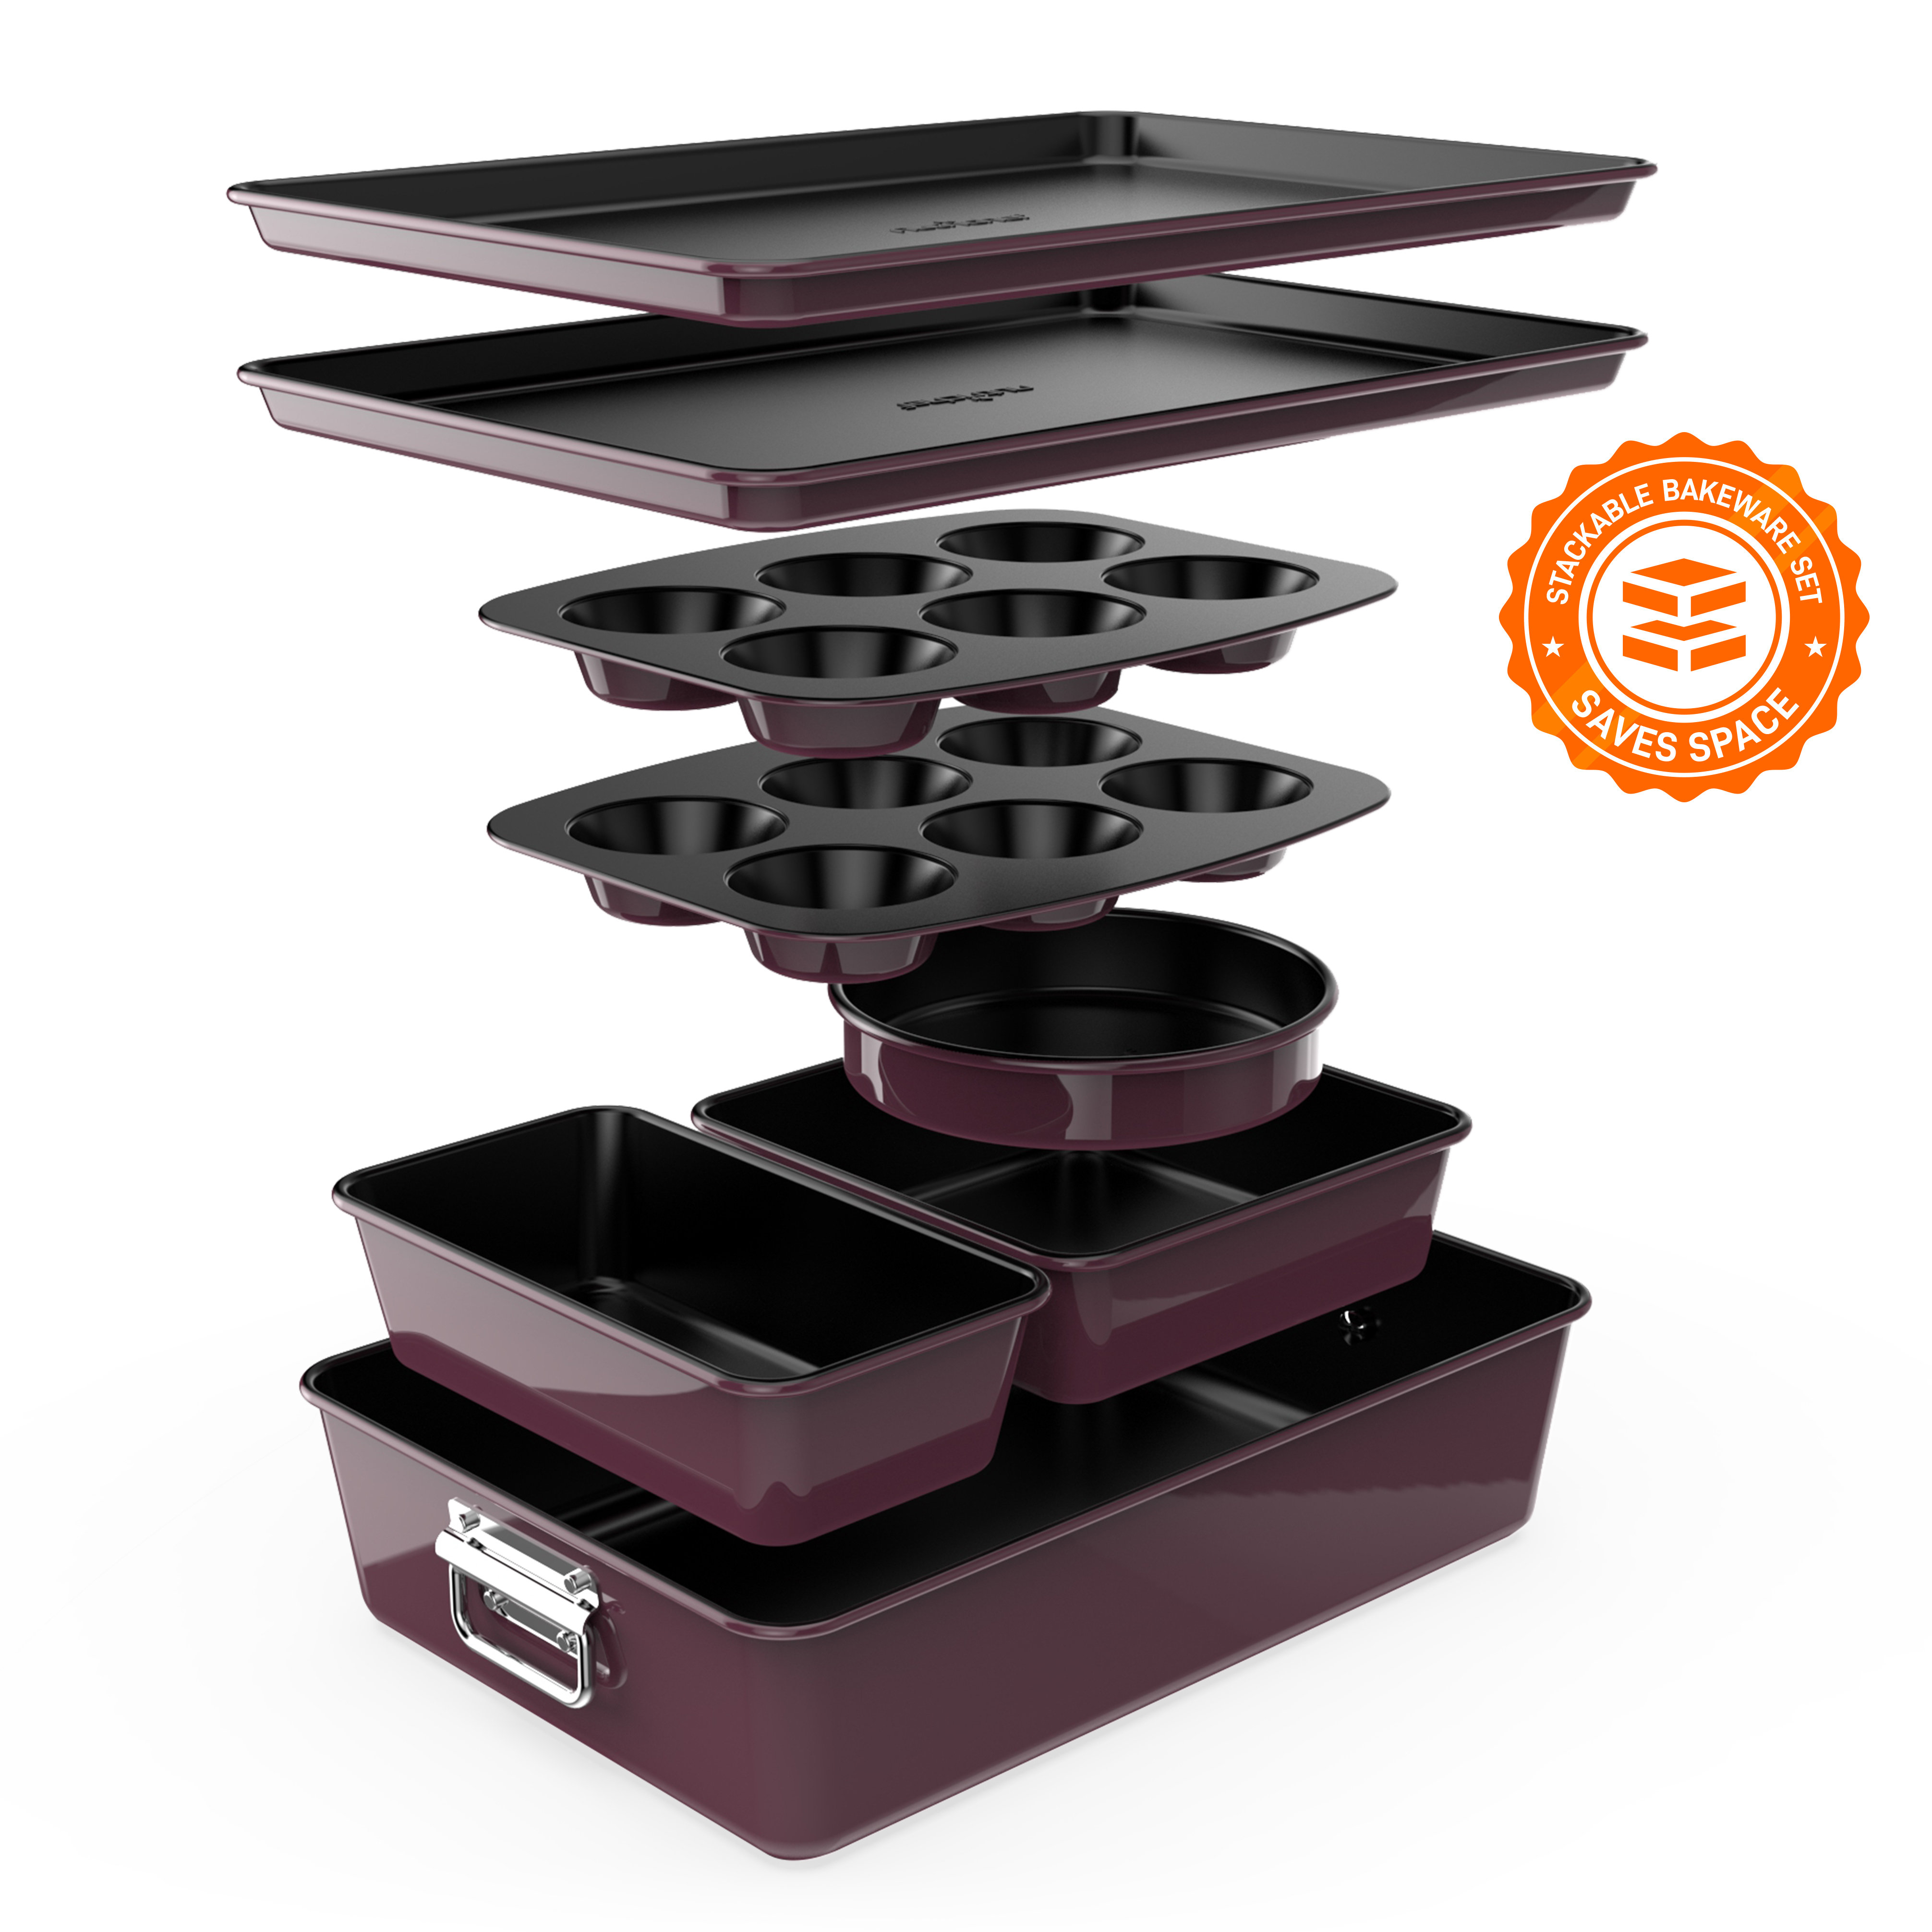 https://assets.wfcdn.com/im/66931734/compr-r85/2005/200511096/8pcs-stackable-carbon-steel-bakeware-sets-non-stick-coating-bake-tray-sheet-bakeware-set-purple.jpg